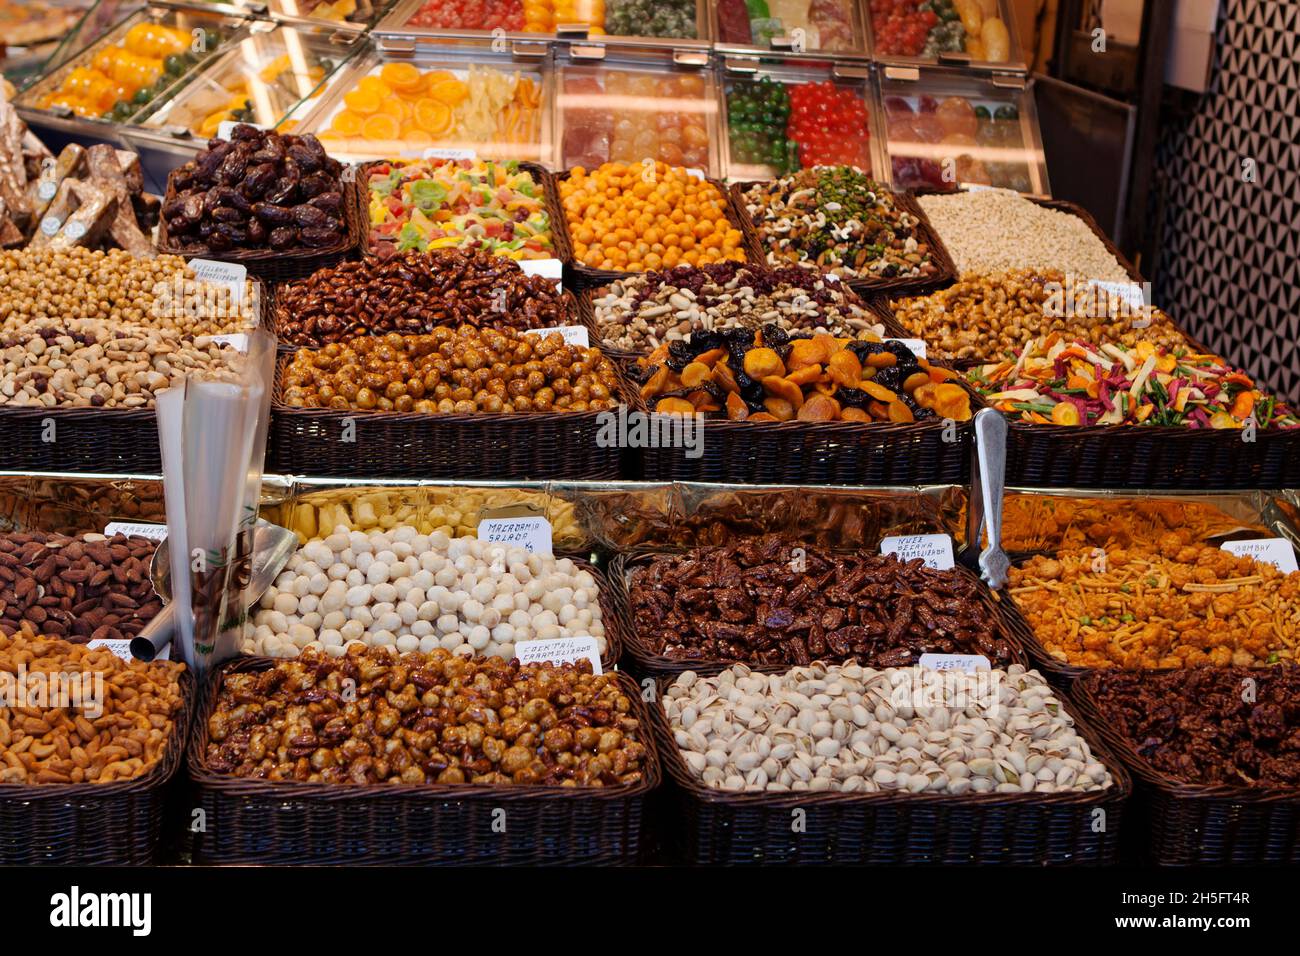 Marktstand mit diversen Nüssen, Trockenobst, getrocknete Früchte, Chili, Paprikaschoten und Weiteres in Barcelona, Spanien. Stock Photo